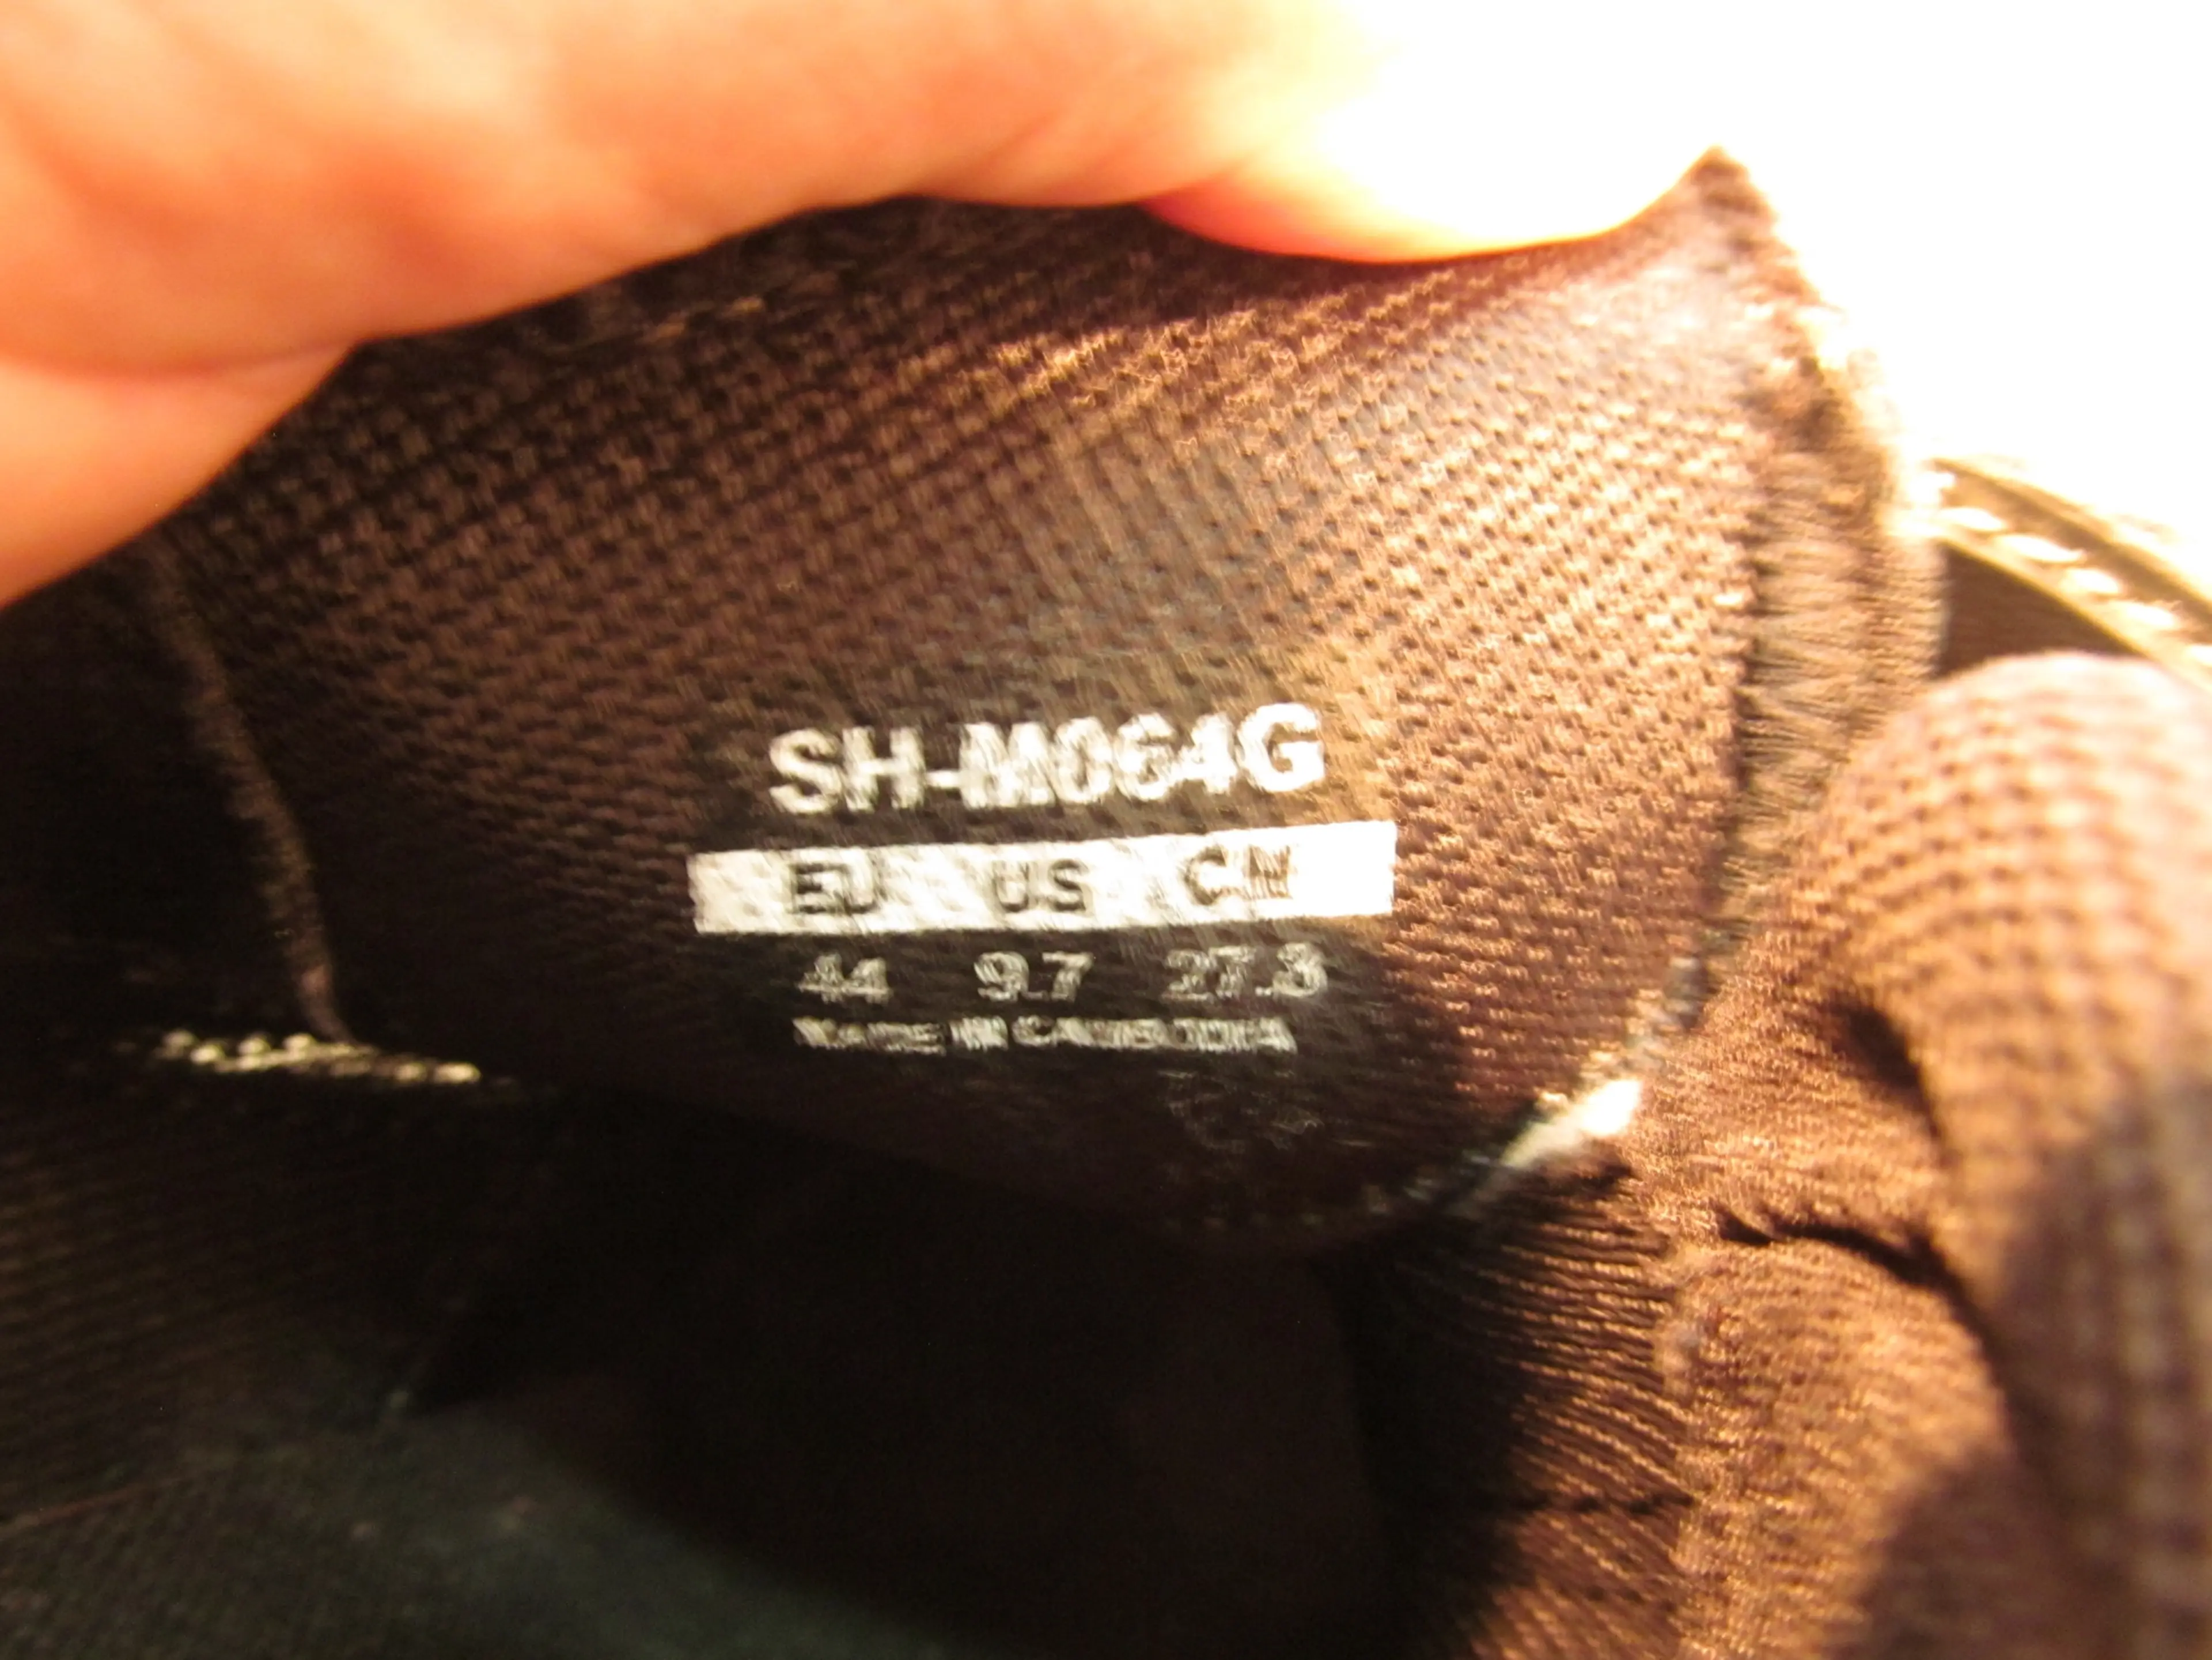 Image Pantofi Shimano SH-M064G, nr 44, 27.8 cm